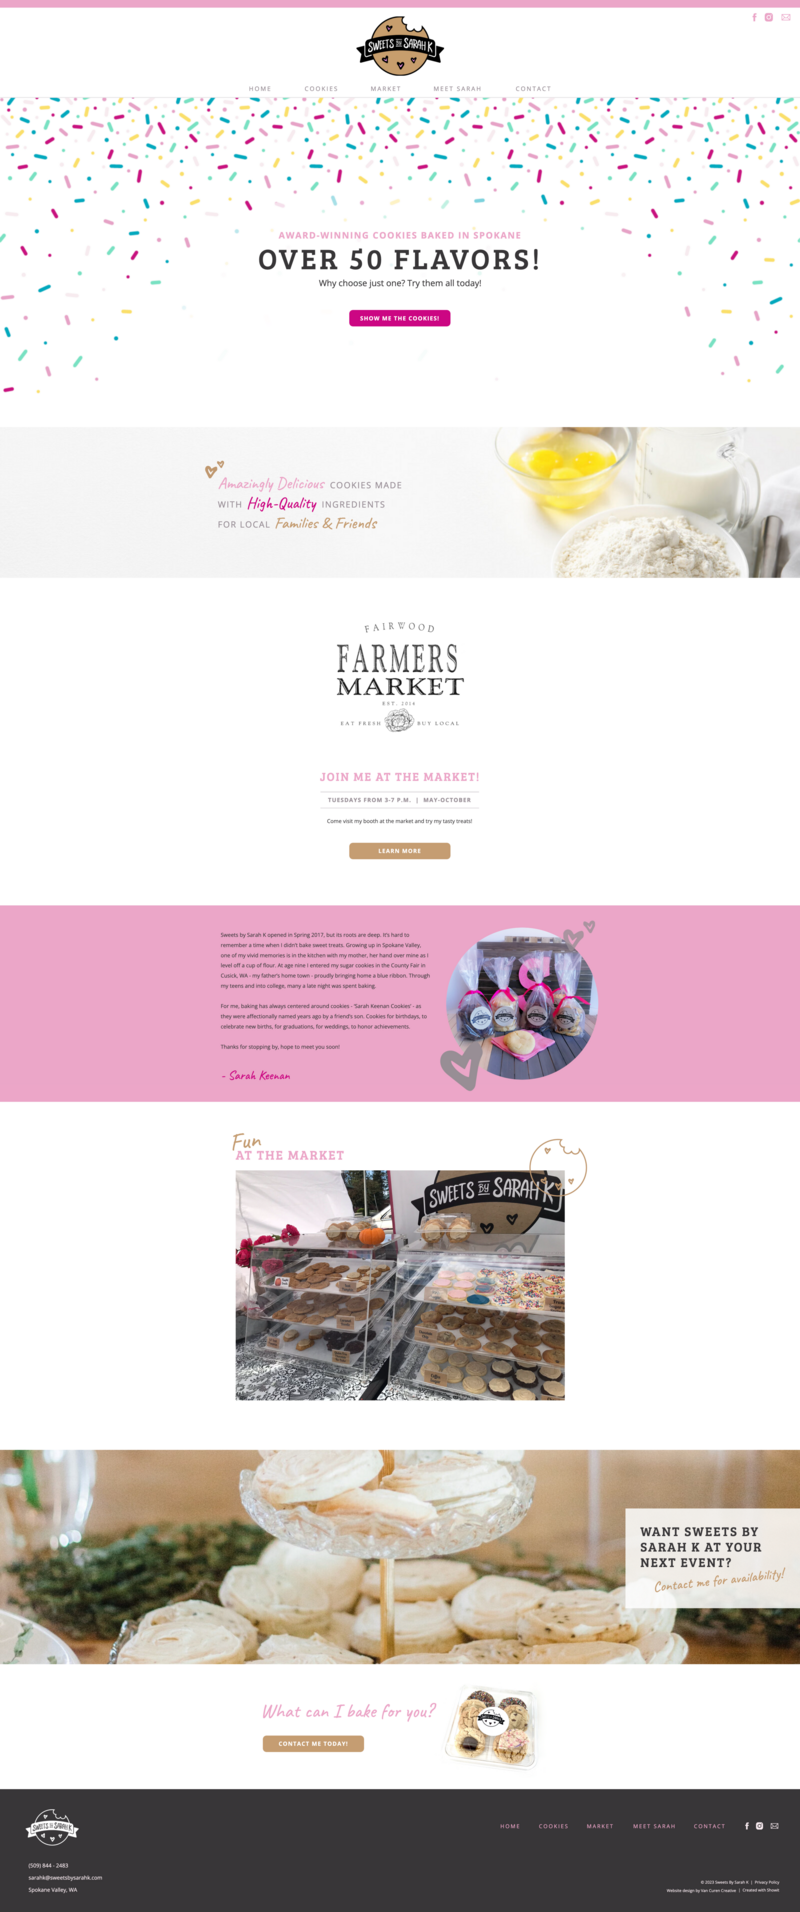 Sweets By Sarah K | After Website Design | Van Curen Creative